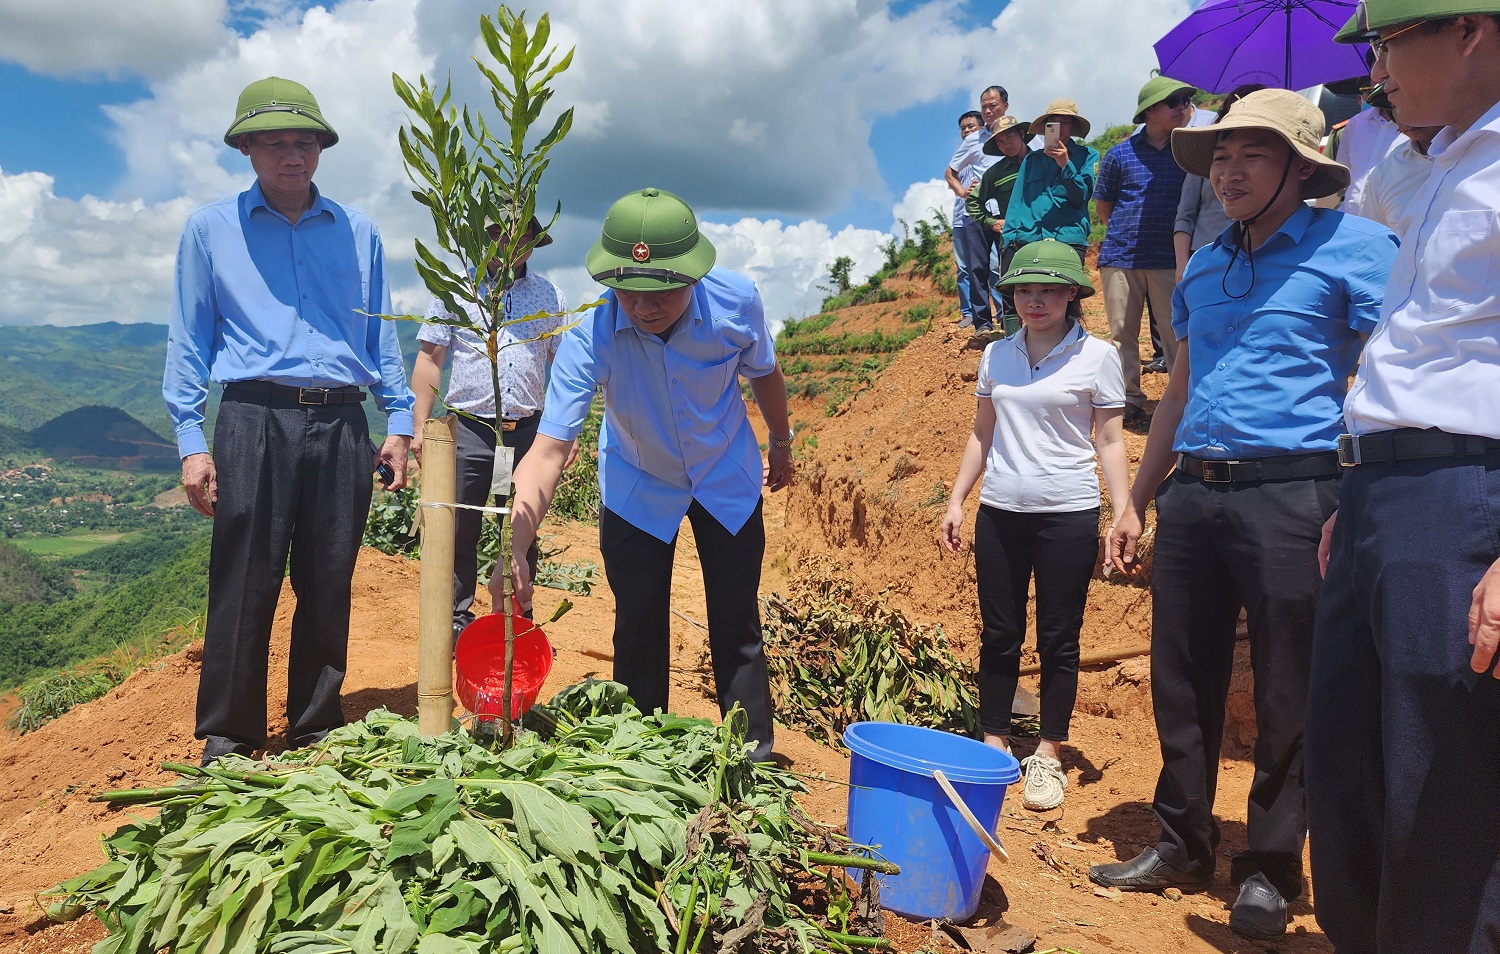 Đồng chí Lê Thành Đô, Chủ tịch Ủy ban nhân dân tỉnh Điện Biên động viên nhân dân huyện Điện Biên Đông tích cực tham gia các dự án trồng mắc-ca, xóa đói giảm nghèo.